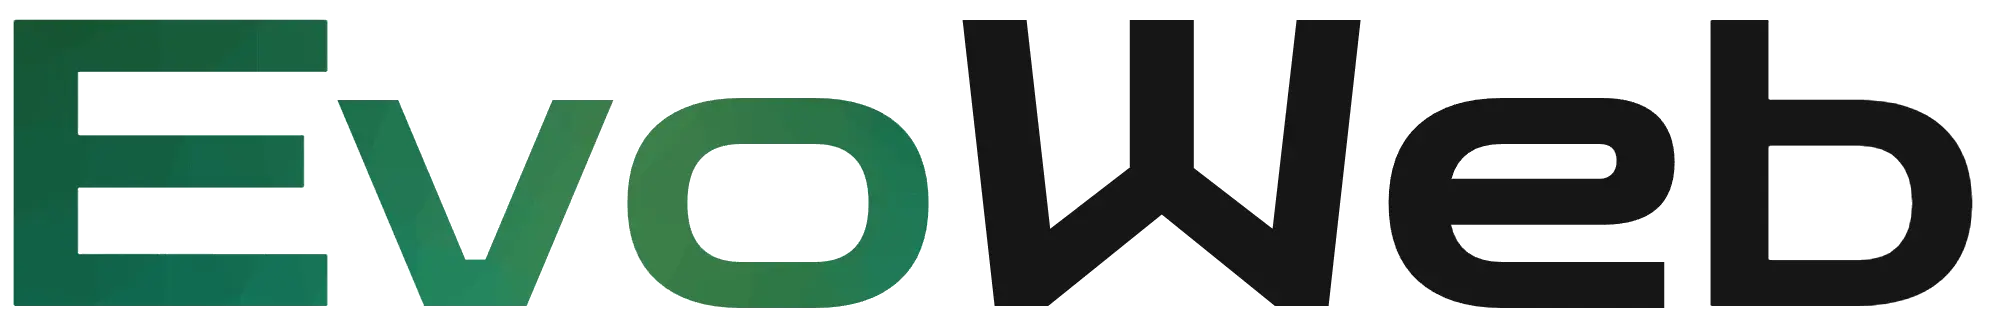 EvoWeb logo